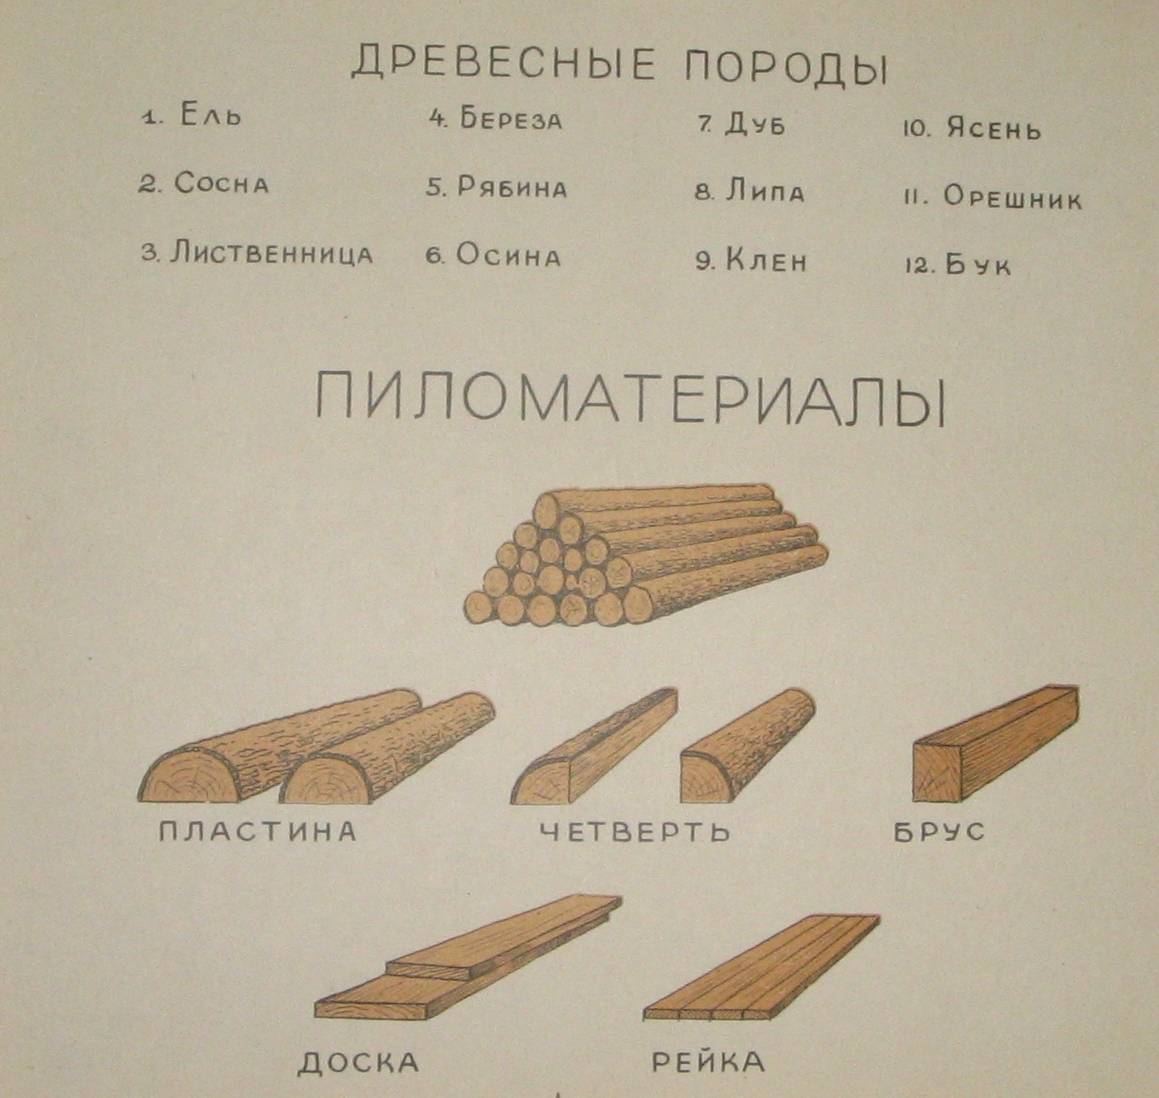 Сортамент пиломатериалов хвойных и лиственных пород